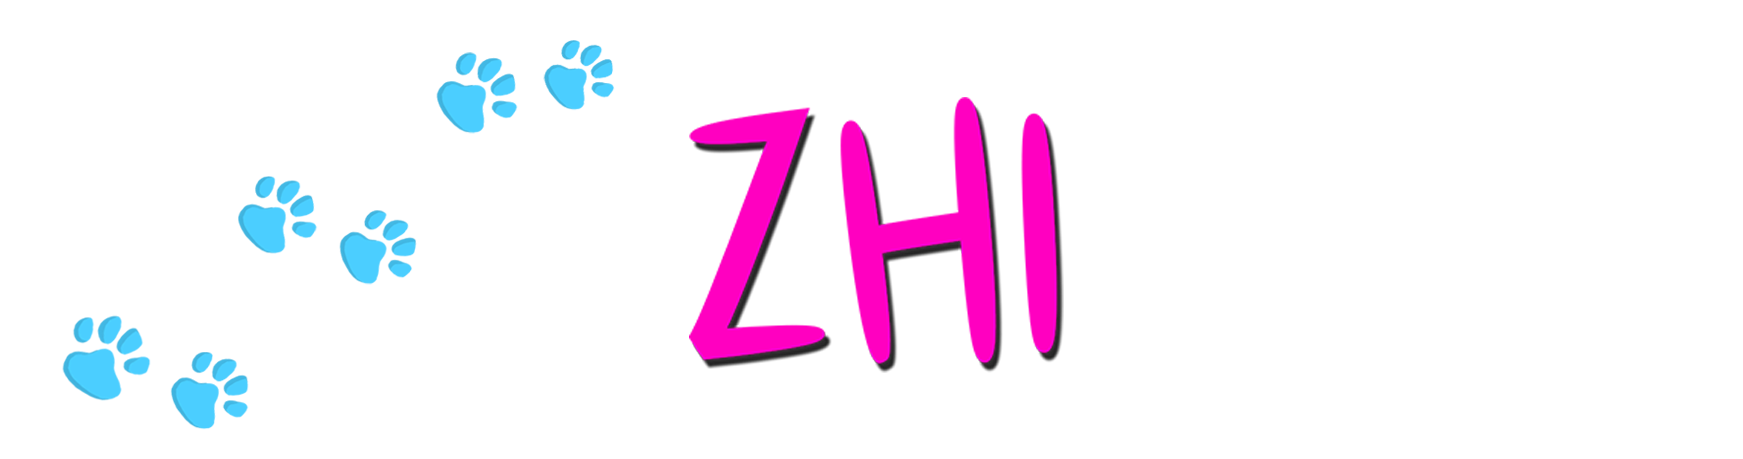 Zhi